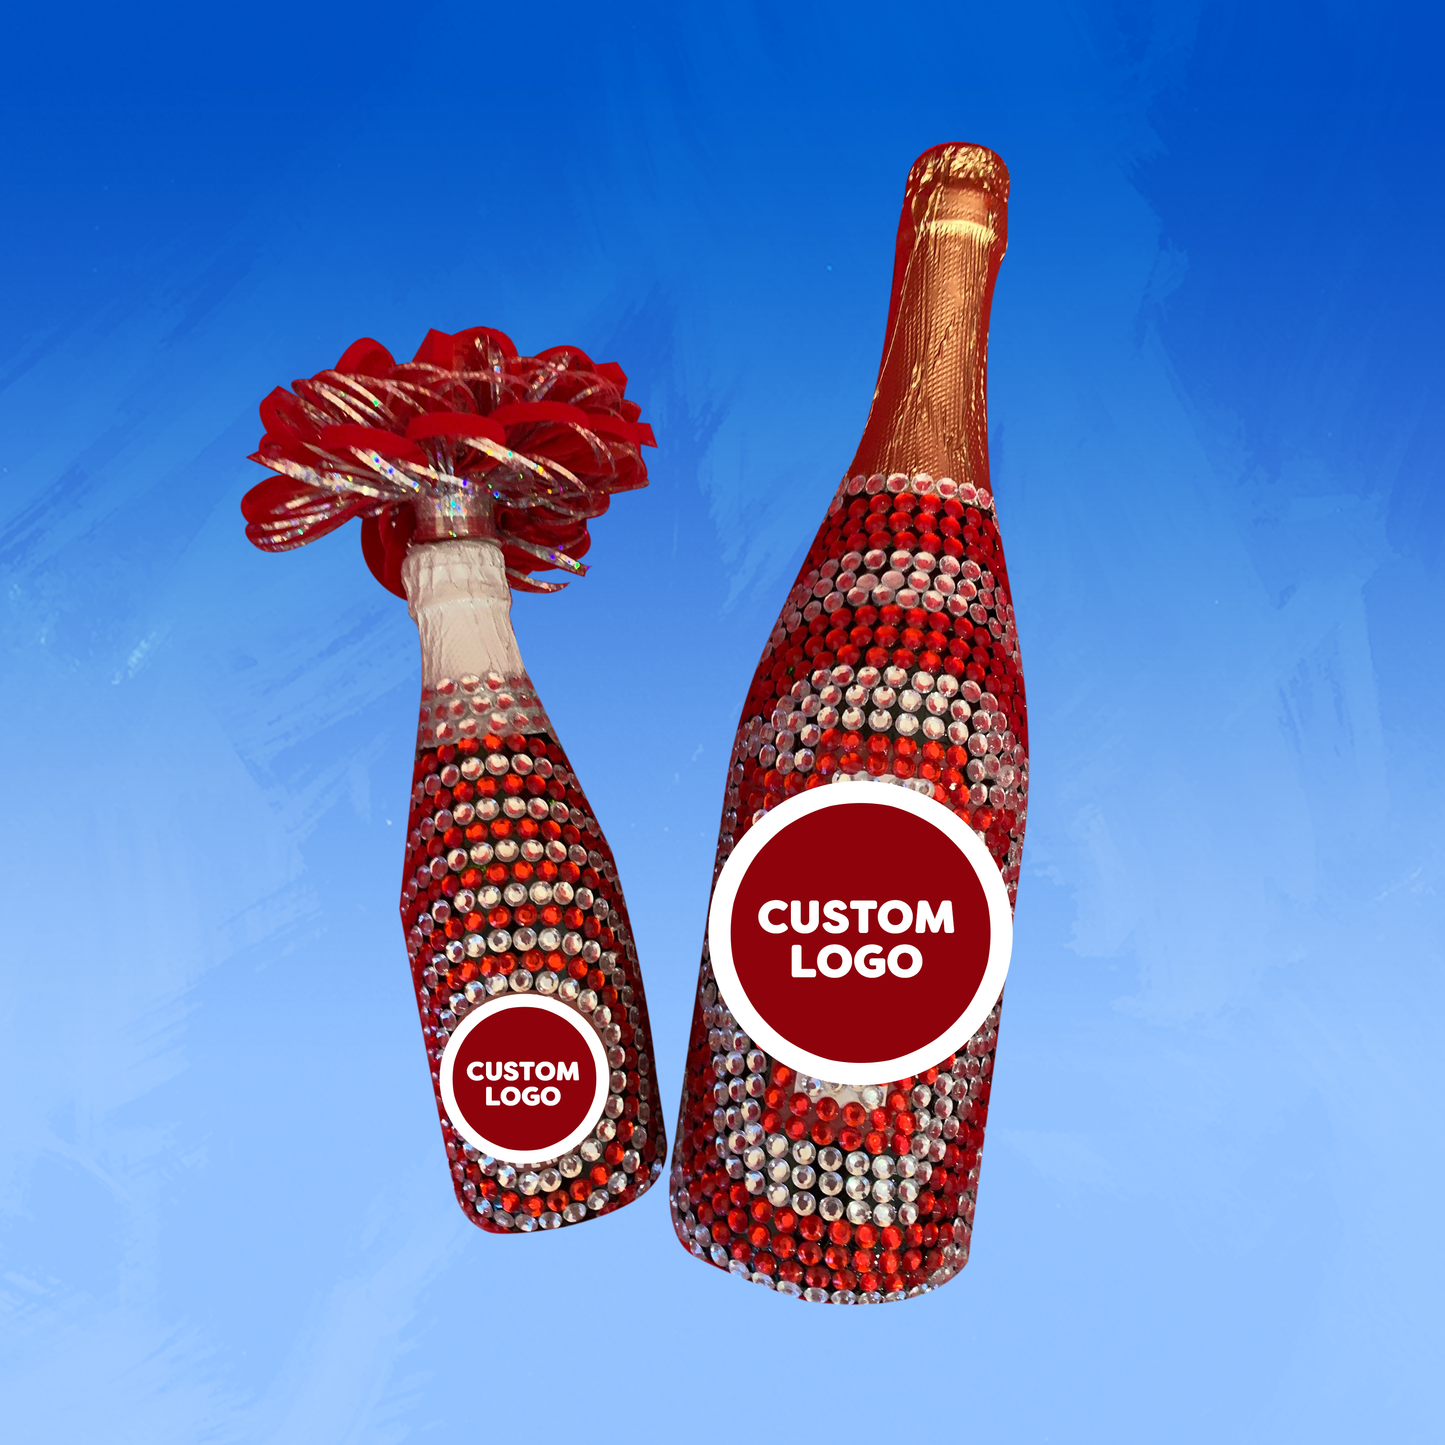 College Bling Bottles™  Custom Bundle 1 -Regular size & mini bottle (Best Value)